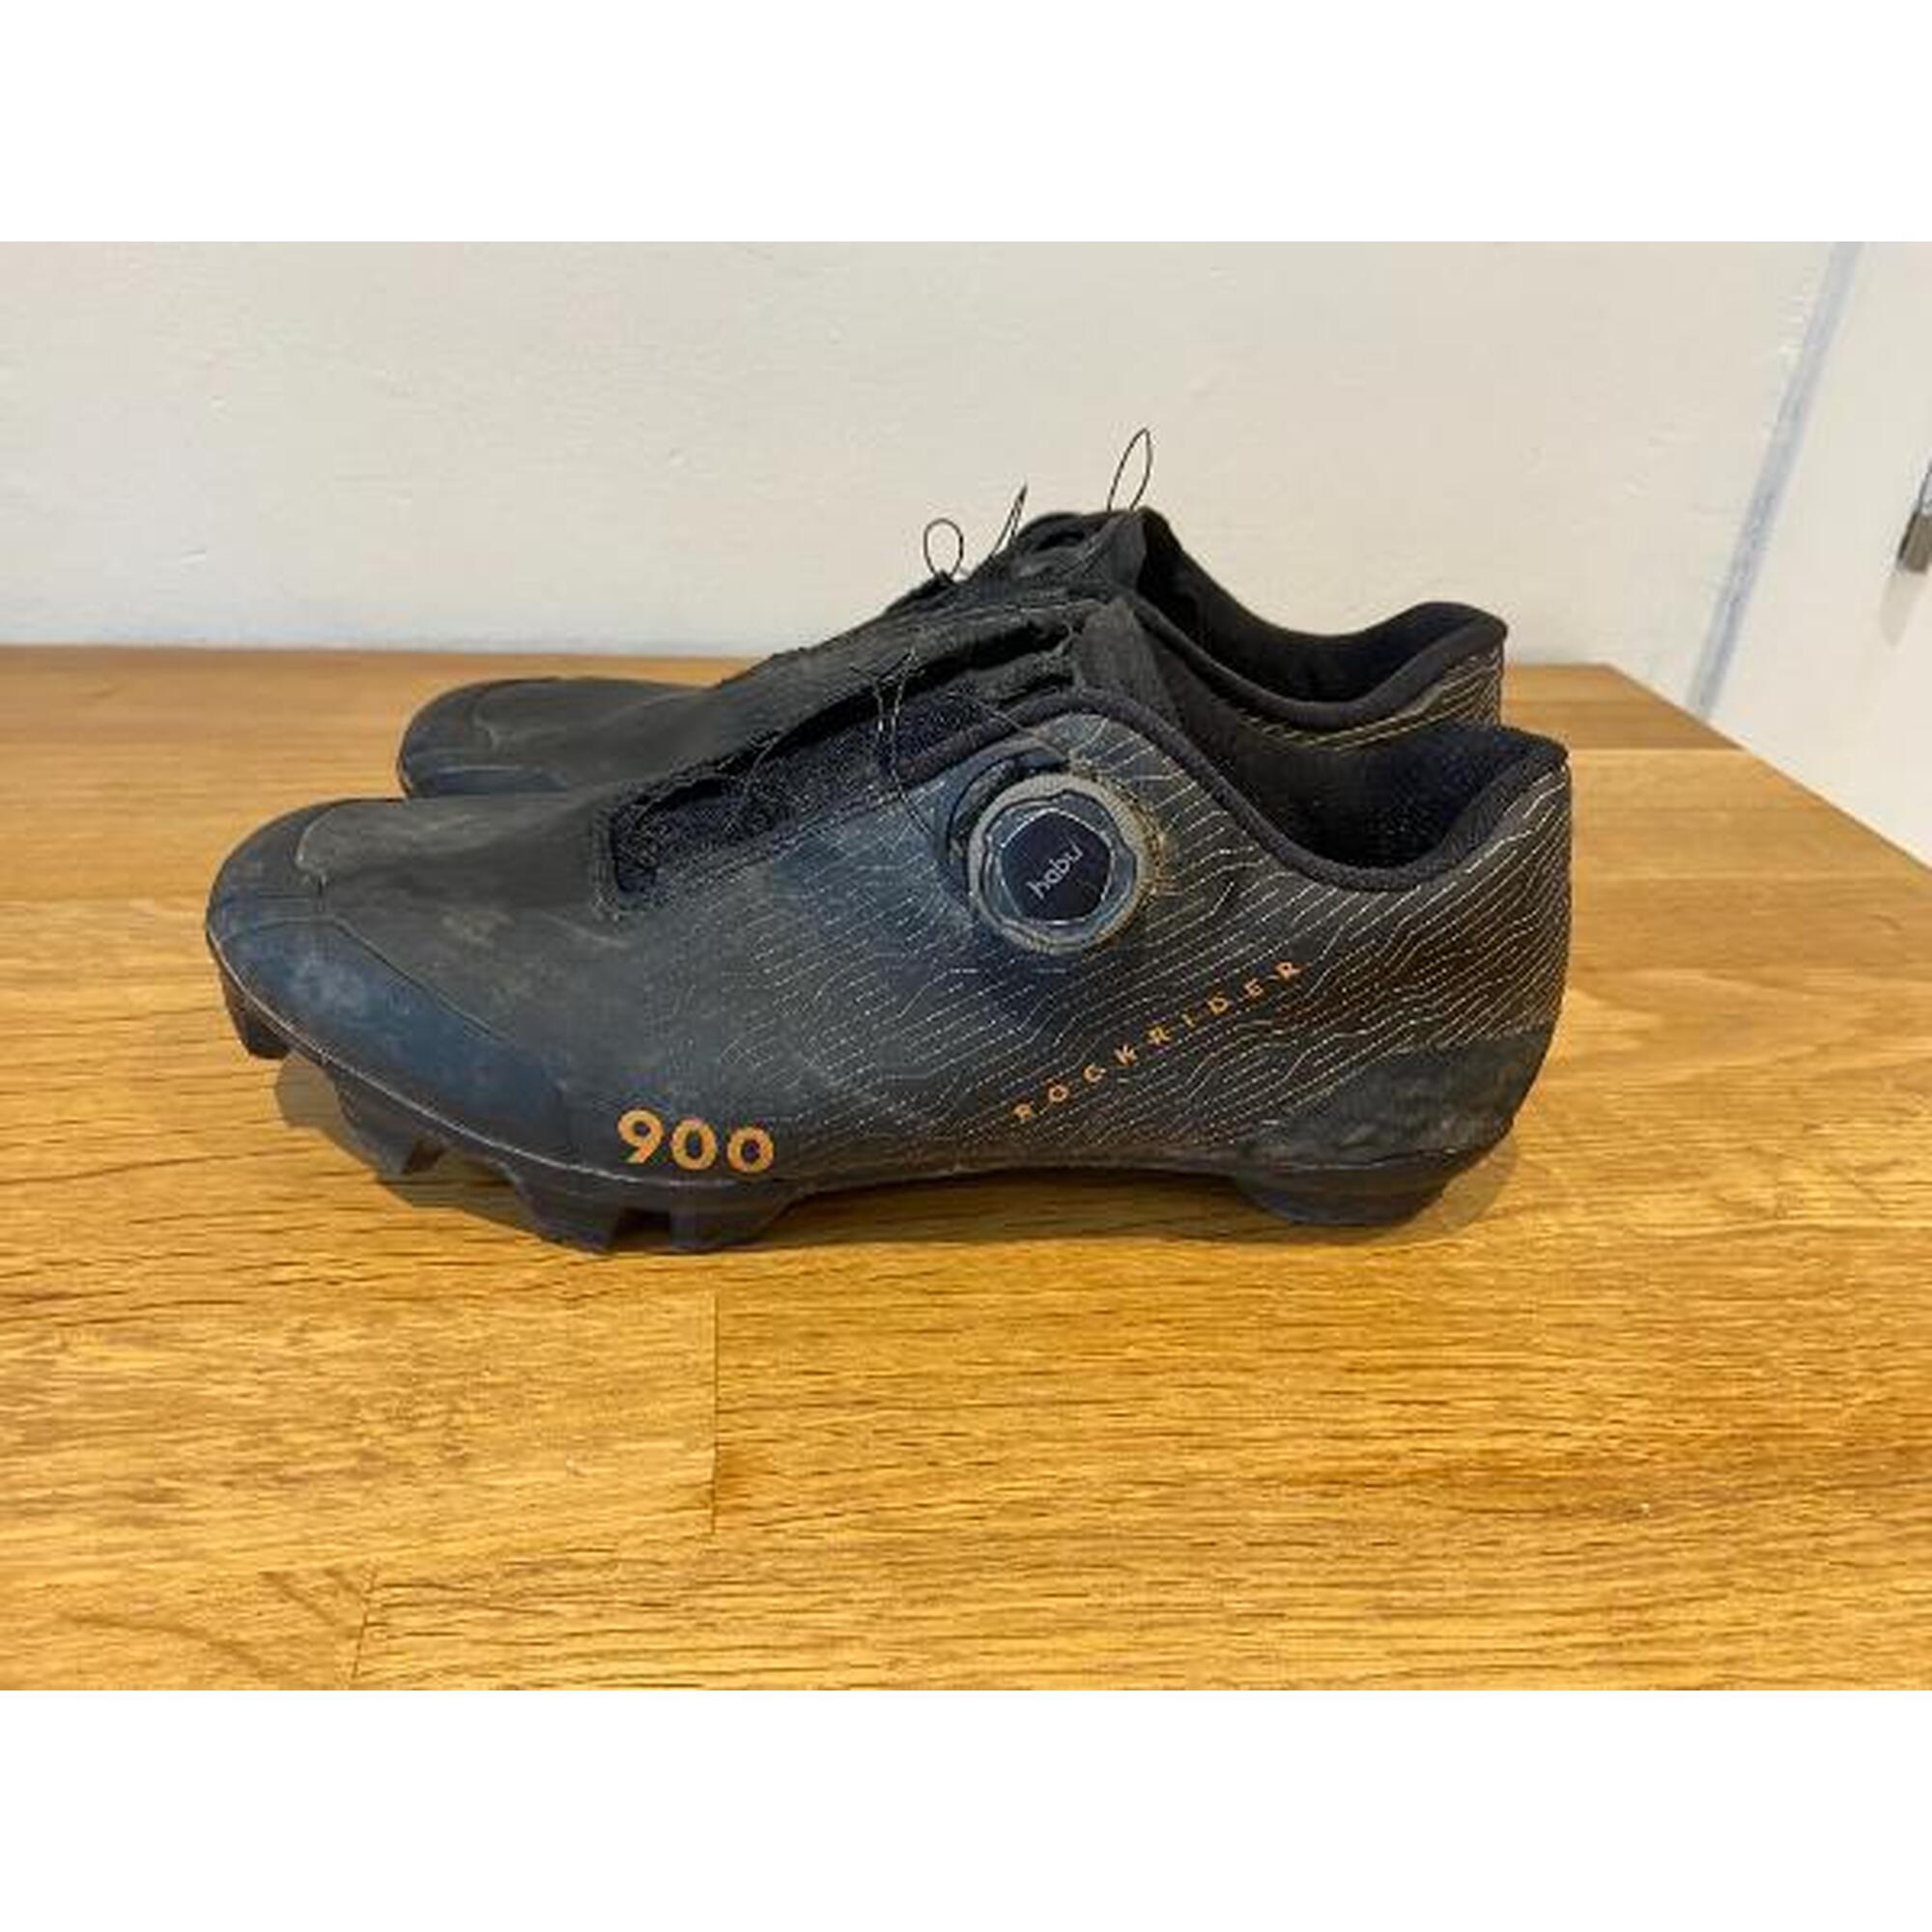 C2C - Rockrider Race 900 schoenen